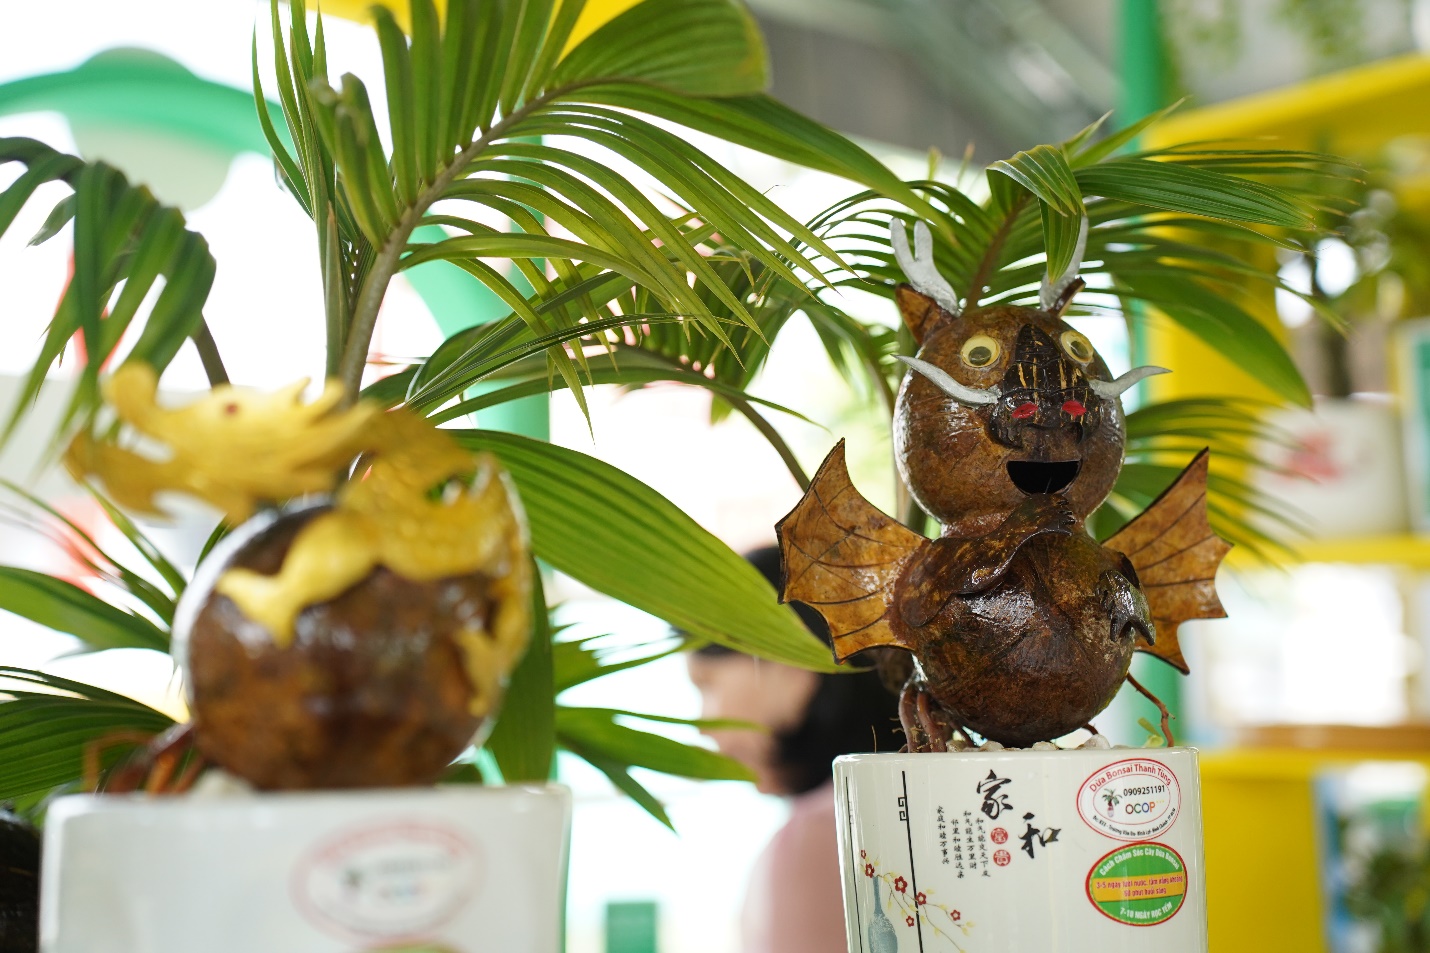 Ghé hội chợ OCOP TP.HCM ngắm bonsai dừa, nếm cá trắm kho riềng, nem cua bể - 7